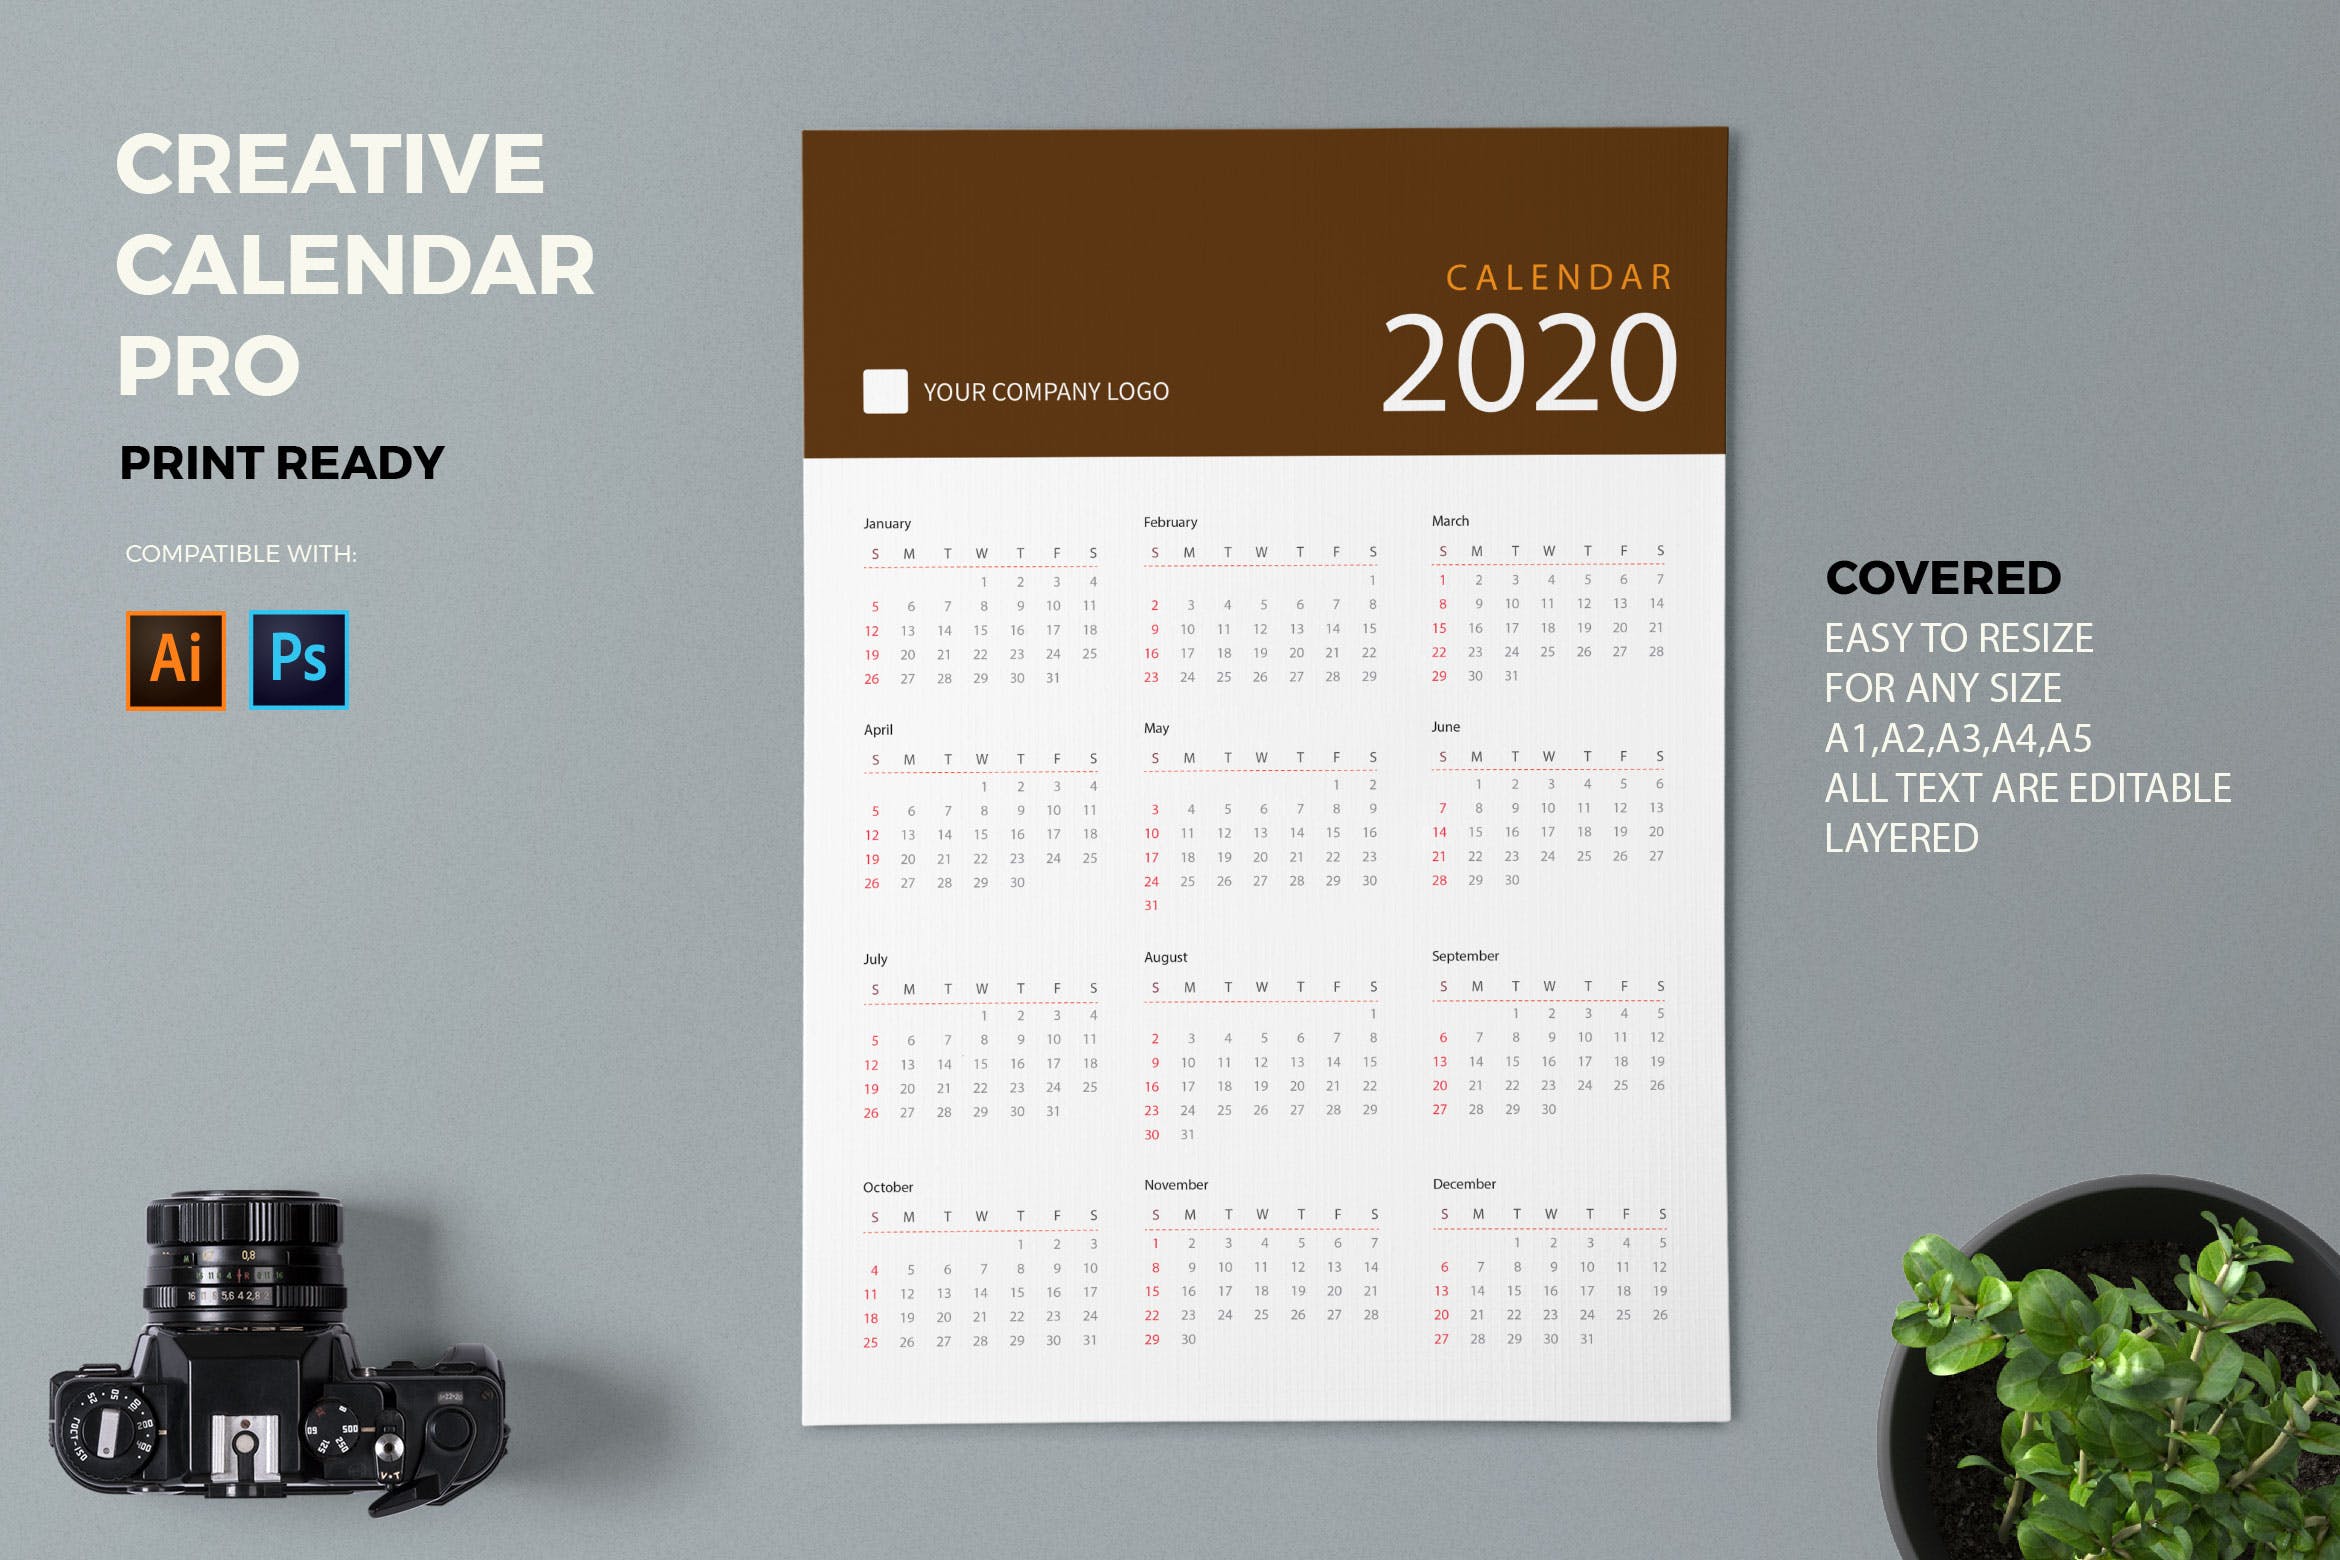 极简主义纯色设计2020年历日历设计模板 Creative Calendar Pro 2020插图